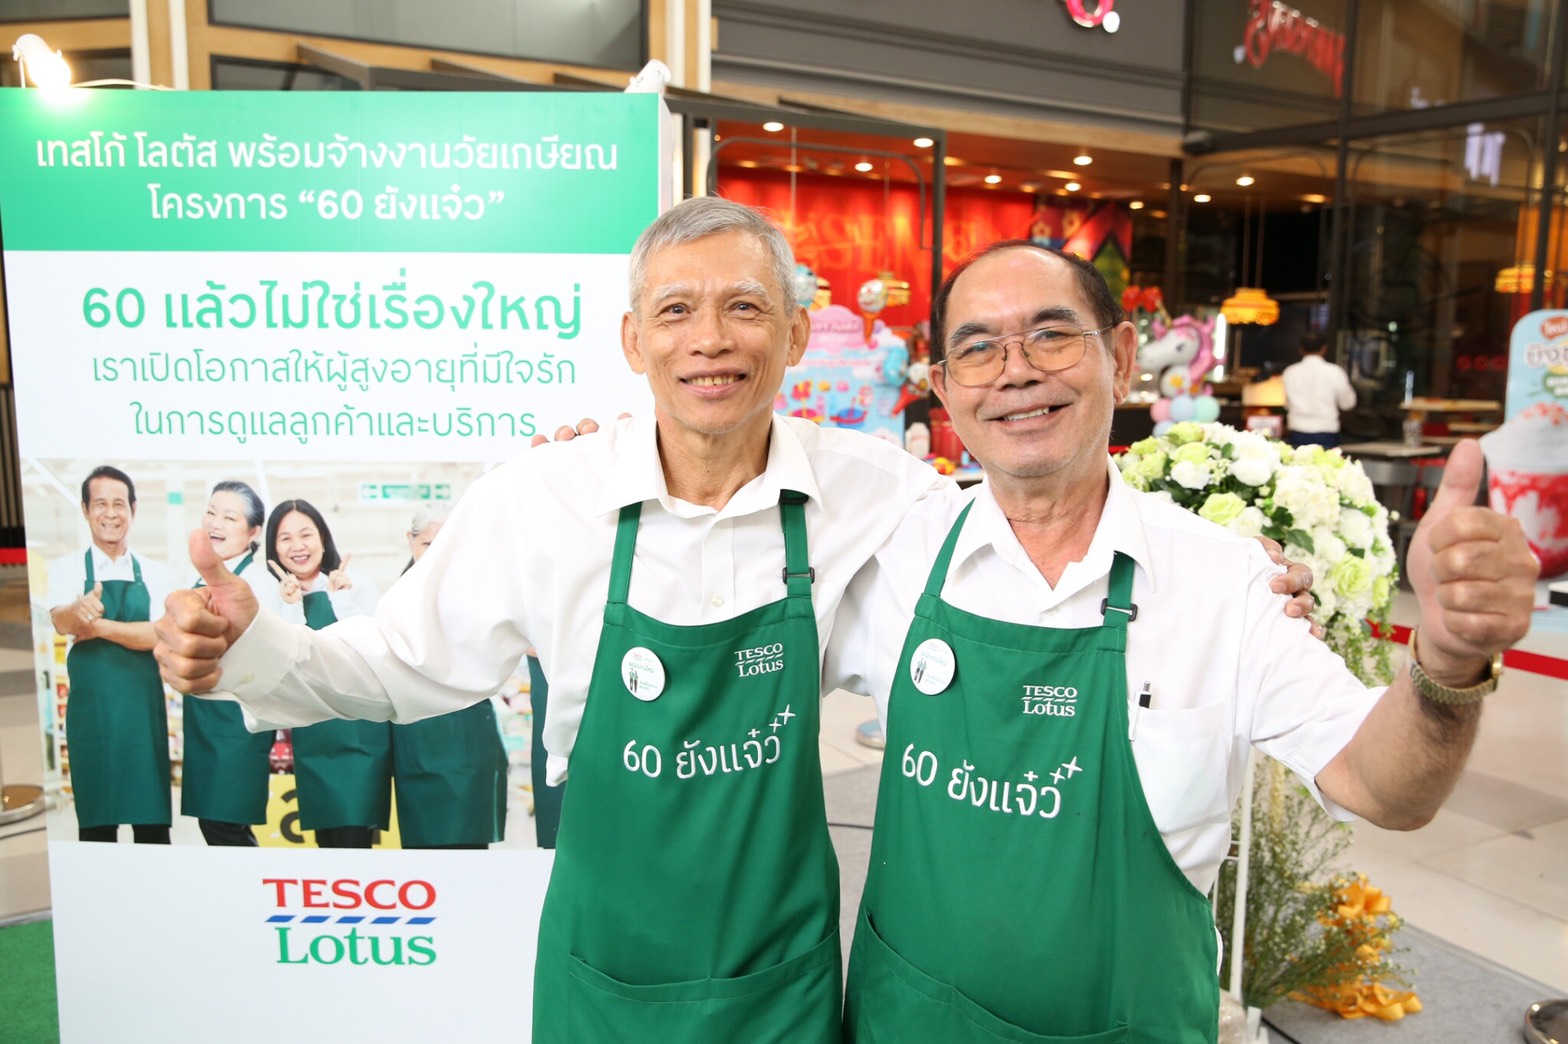 หอการค้าไทย จับมือกระทรวงแรงงาน จัดตลาดงานผู้สูงอายุ 60+ Job Fair เปิดรับสมัครงานกว่า 600 อัตรา โดยบริษัทชั้นนำ 15 แห่ง